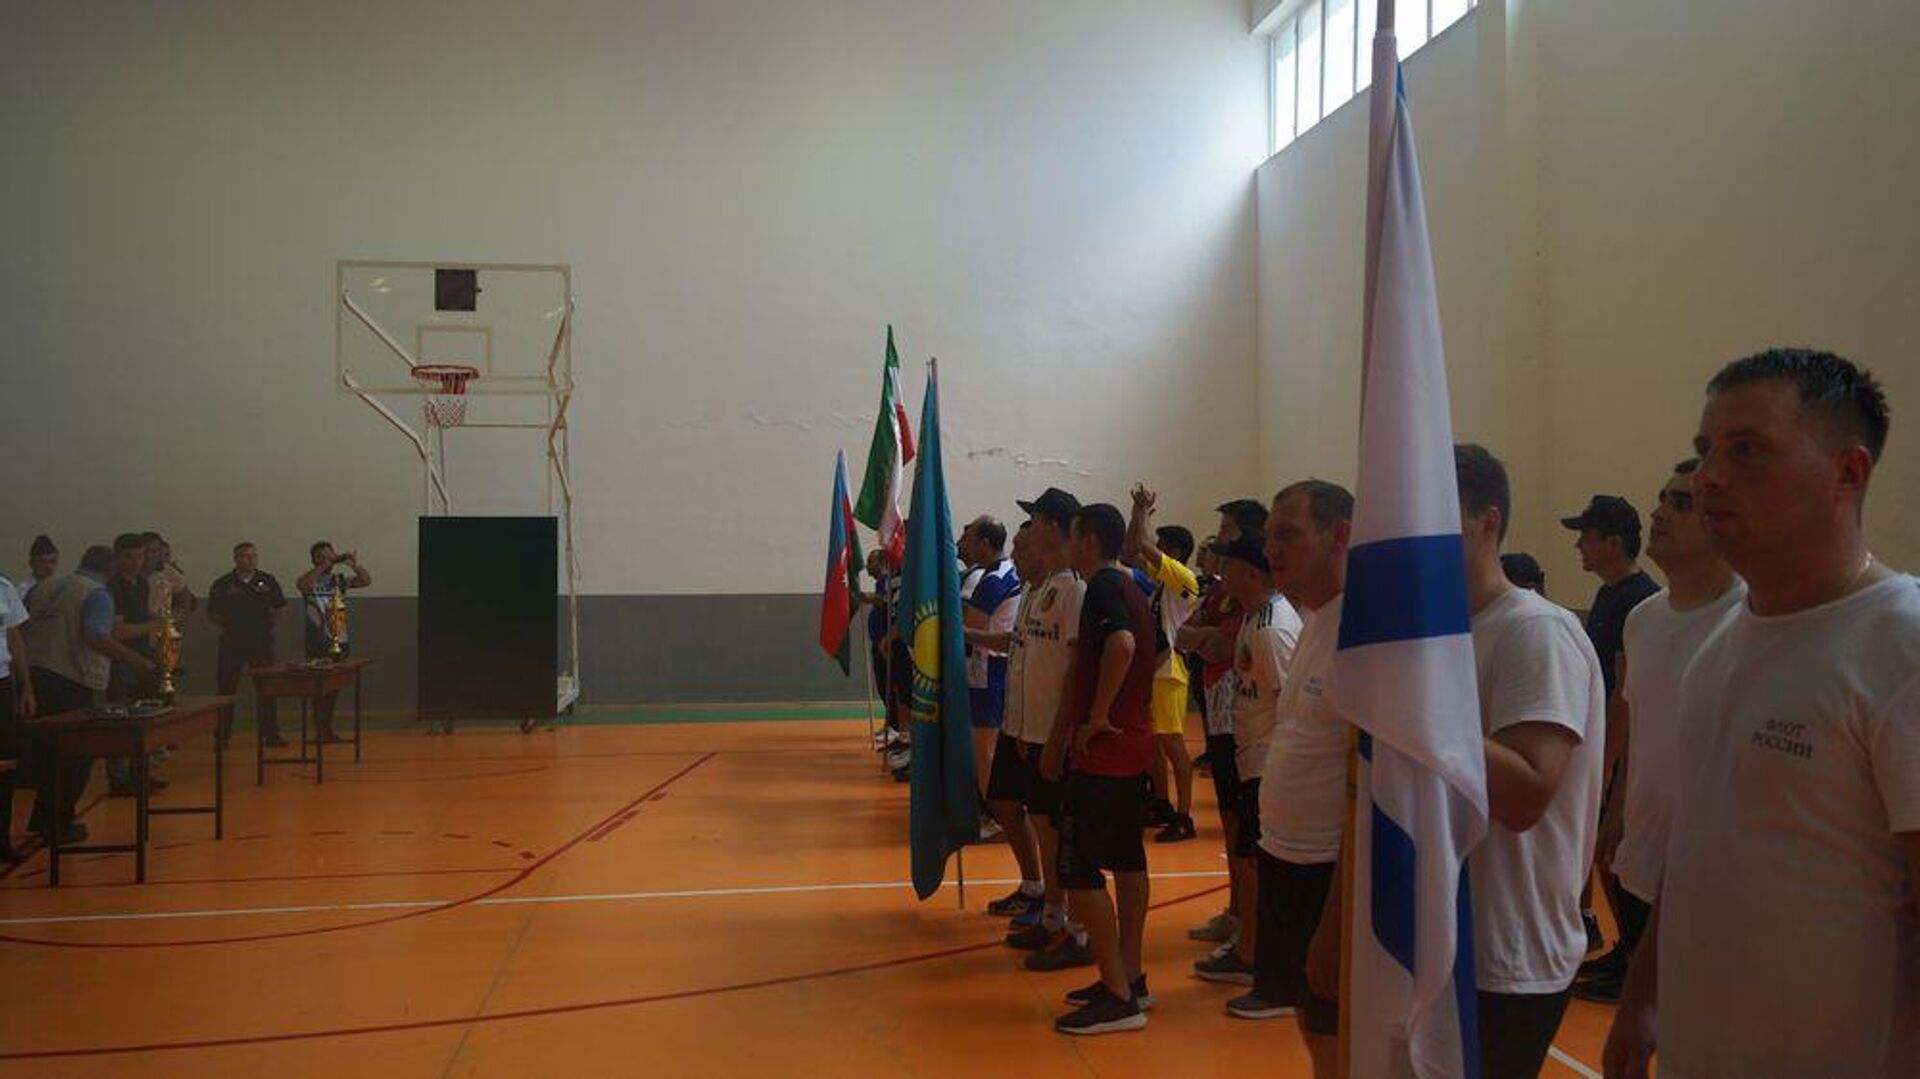 Участники конкурса «Кубок моря-2022» в Азербайджане провели товарищеские встречи по волейболу - Sputnik Азербайджан, 1920, 20.08.2022